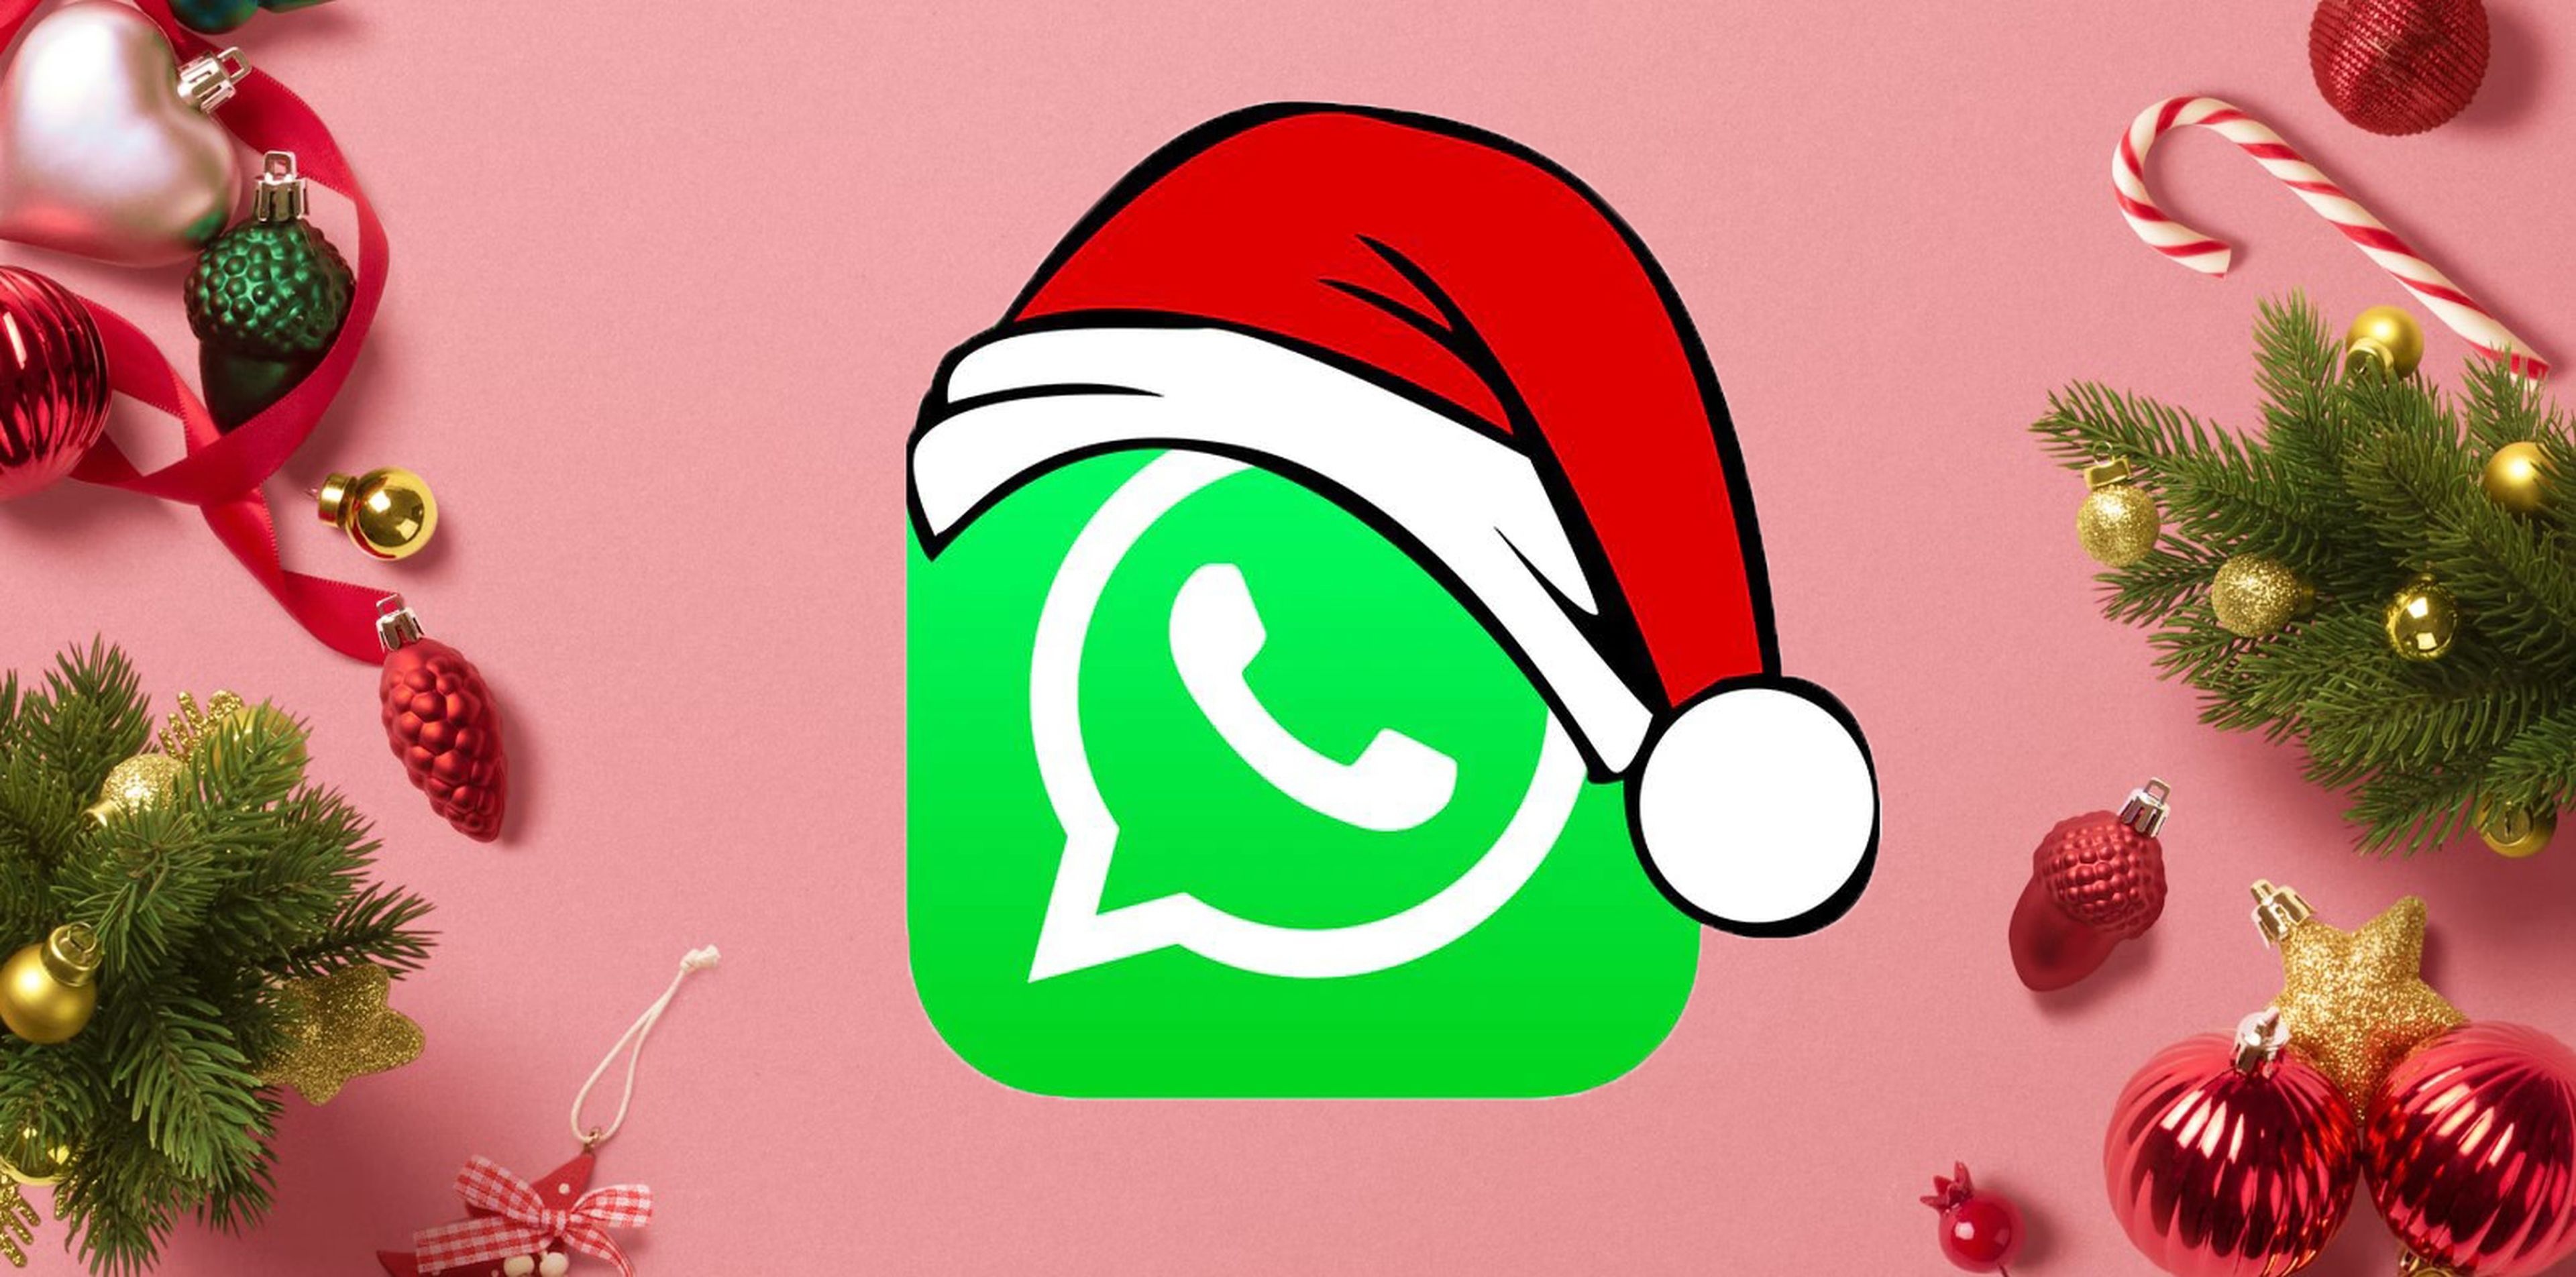 Frases cortas para tus felicitaciones de Navidad 2022 por WhatsApp